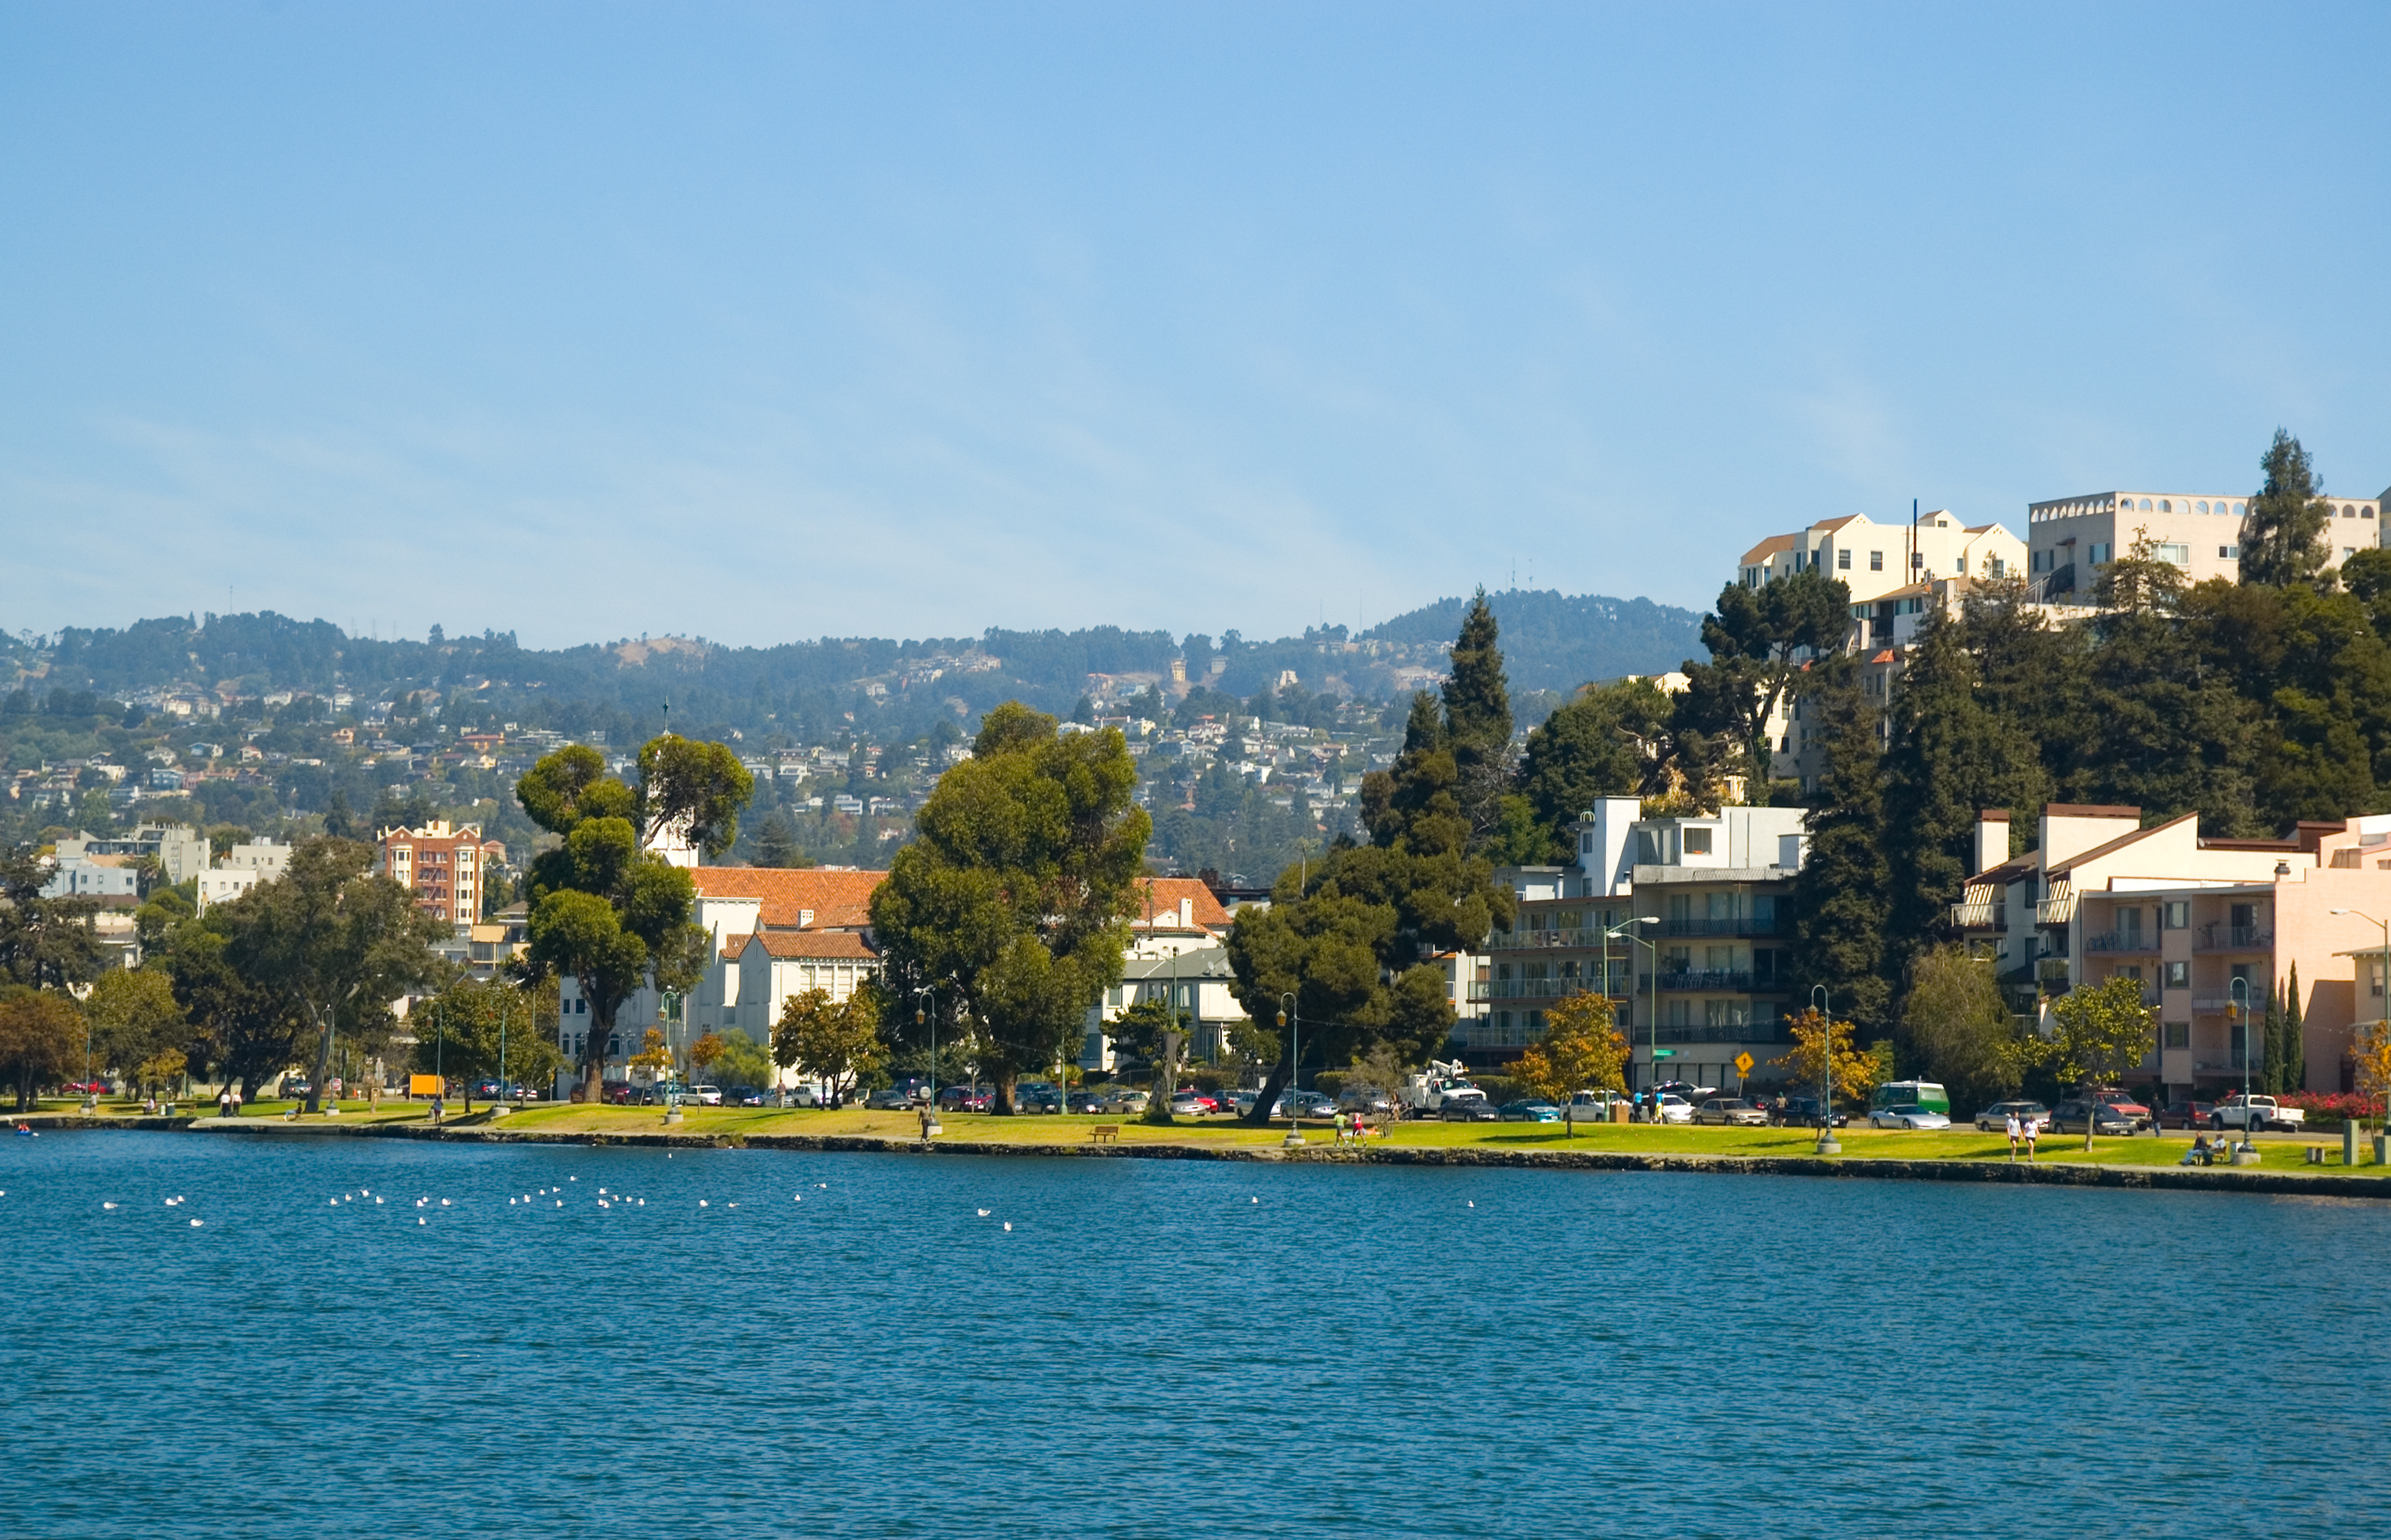 Jezioro Merritt, park, budynki mieszkalne, drzewa i wzgórza Oakland w tle